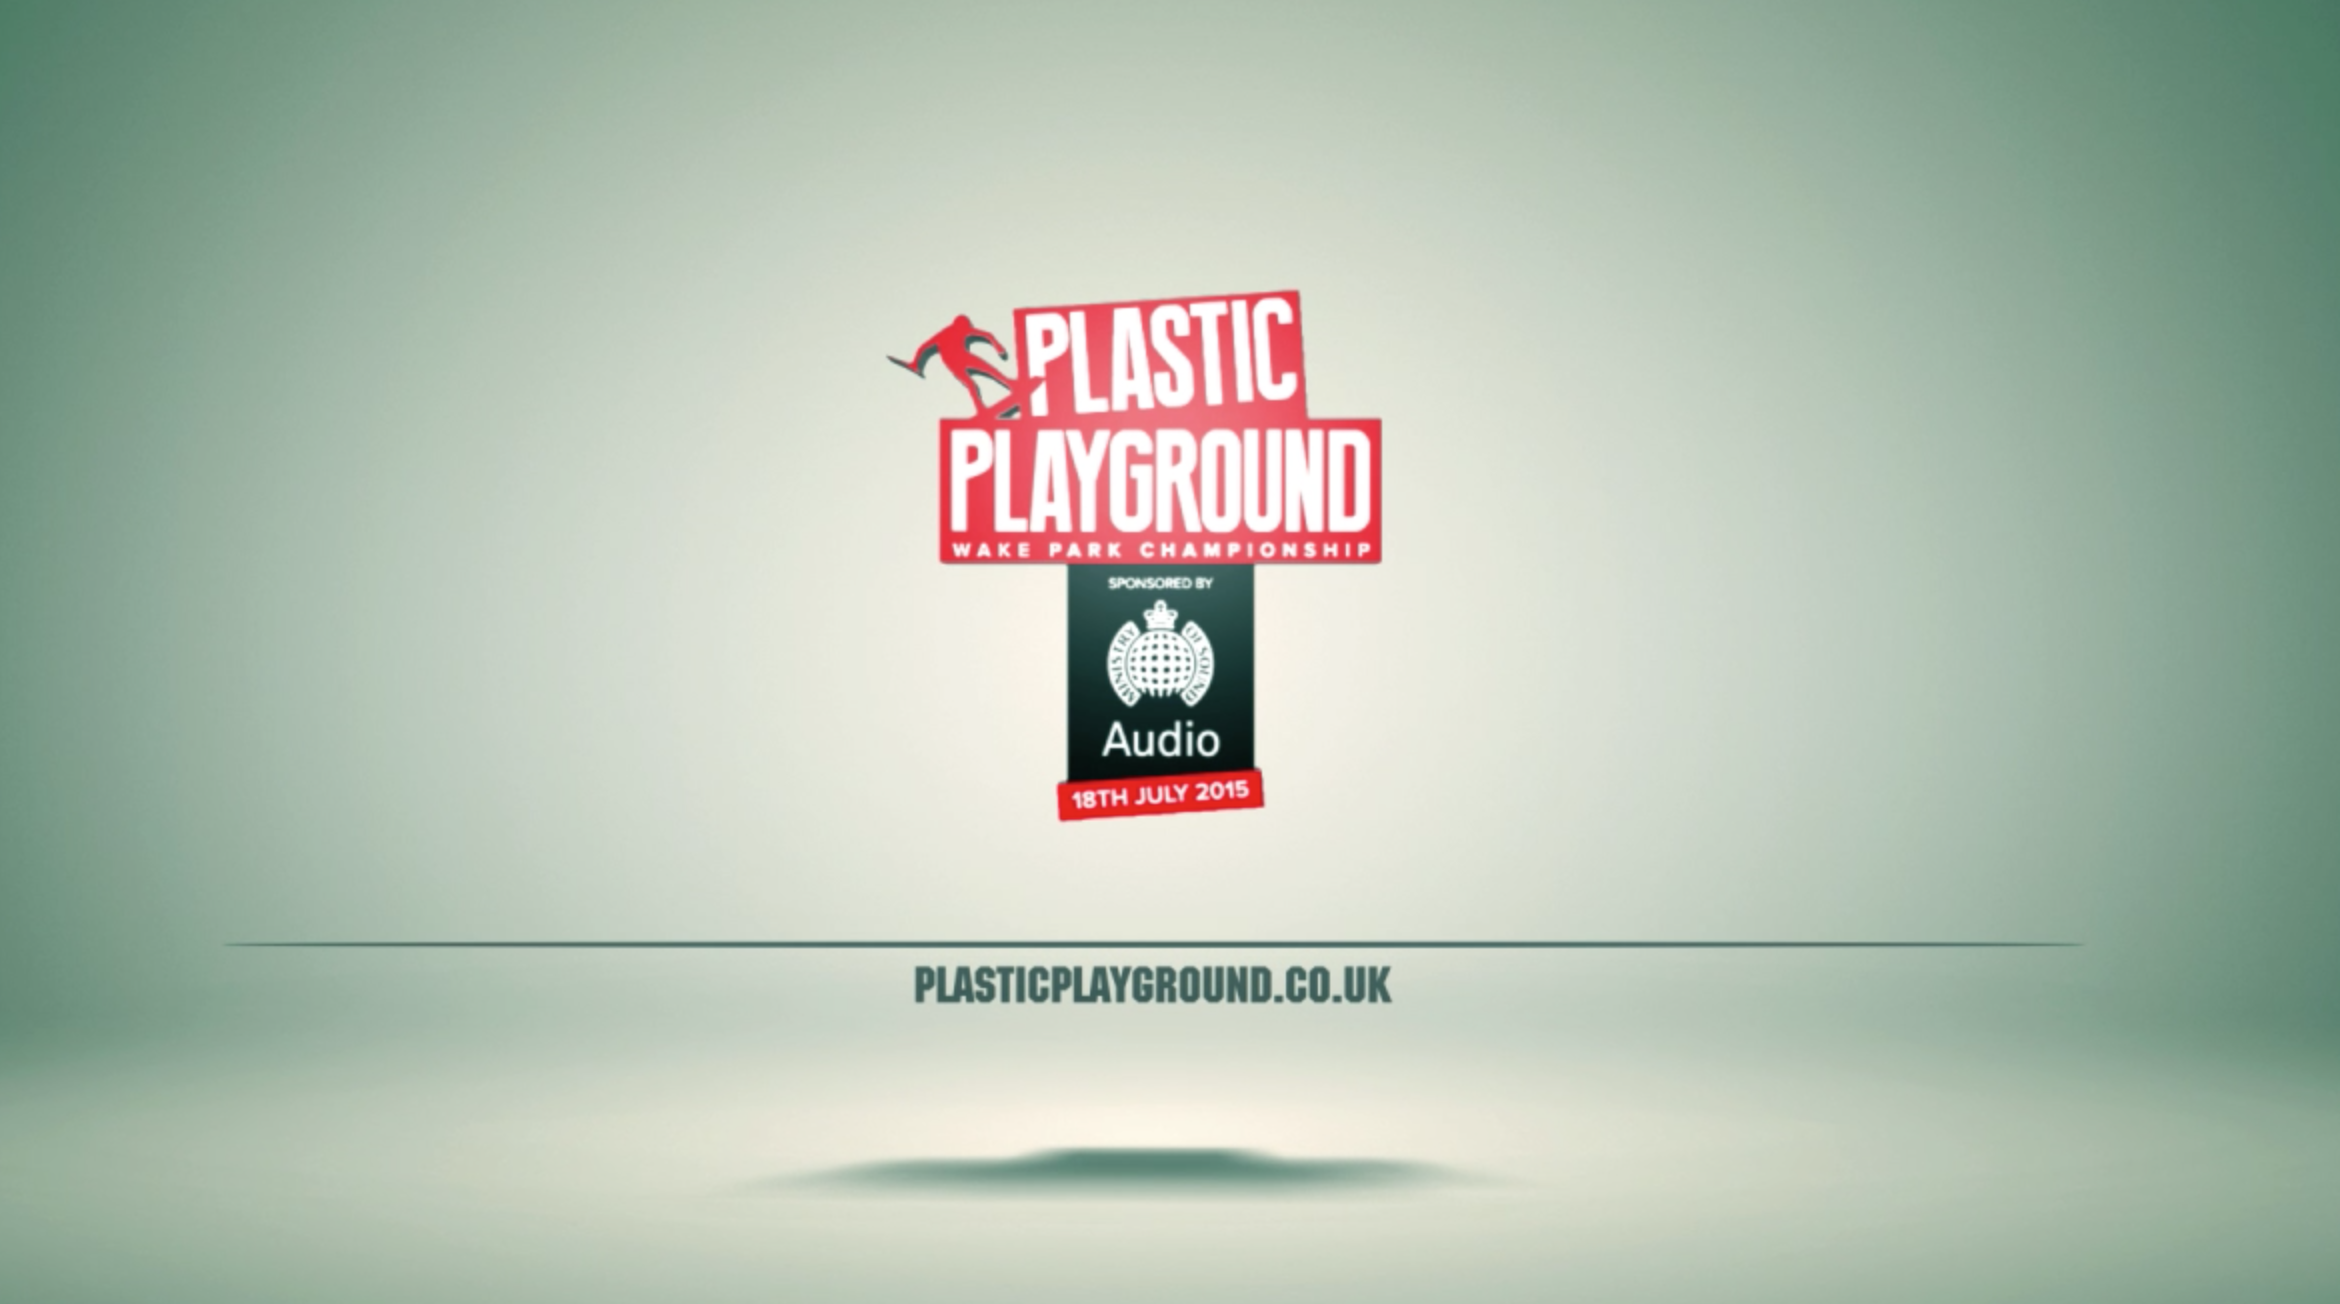 Plastic playground 2015